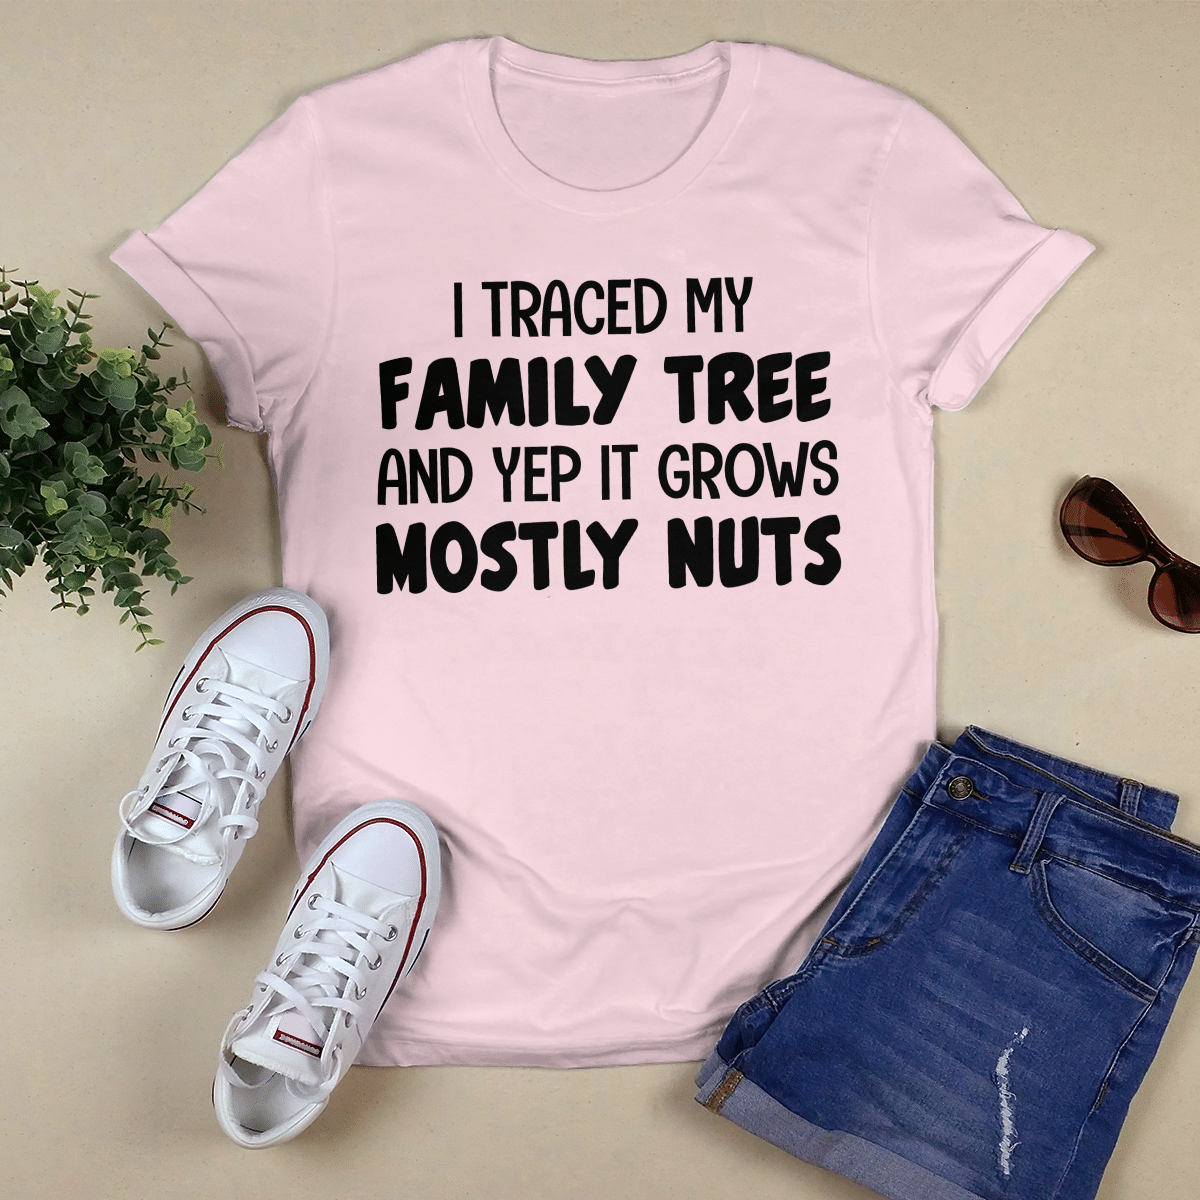 I Traced My Family Tree shirt